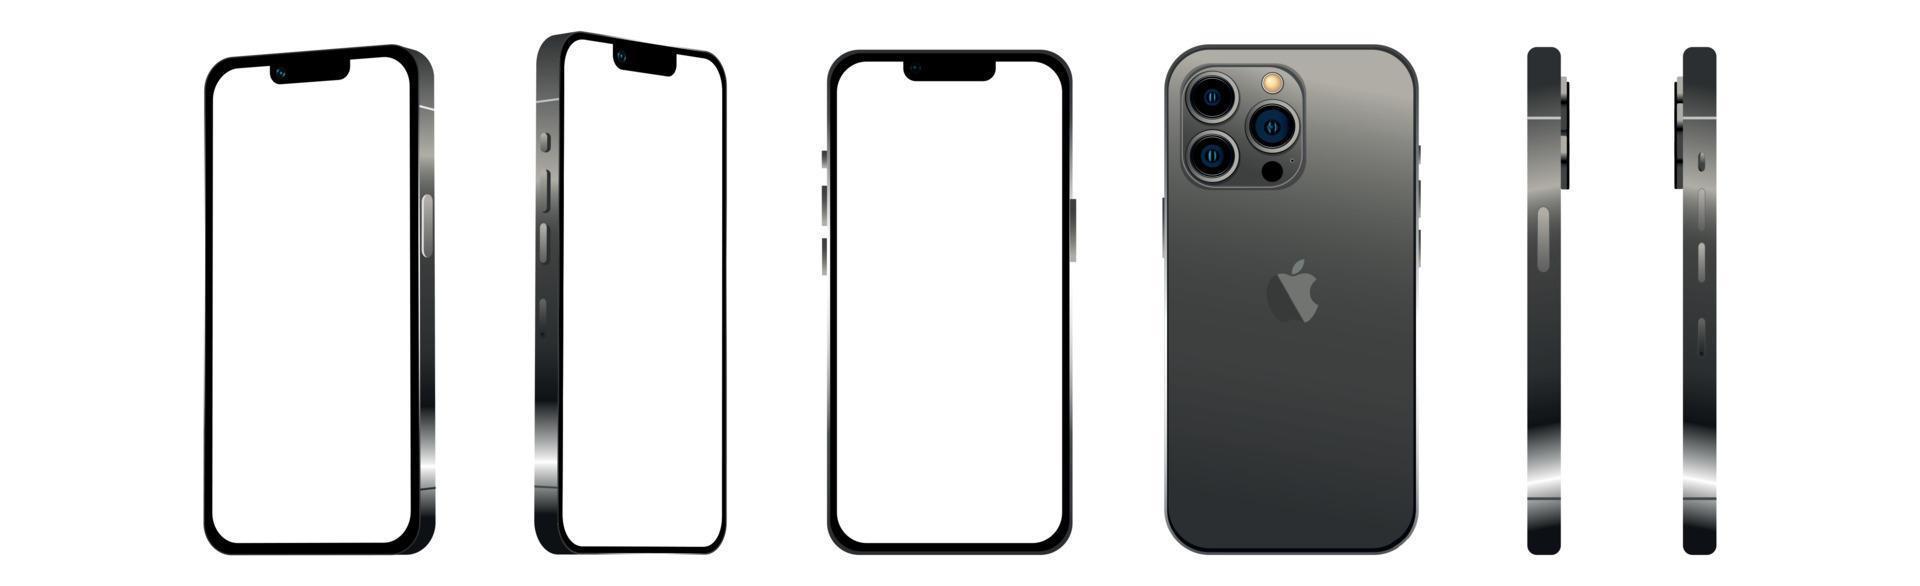 svart modern smartphone mobil iphone 13 pro i 6 olika vinklar på en vit bakgrund - vektor